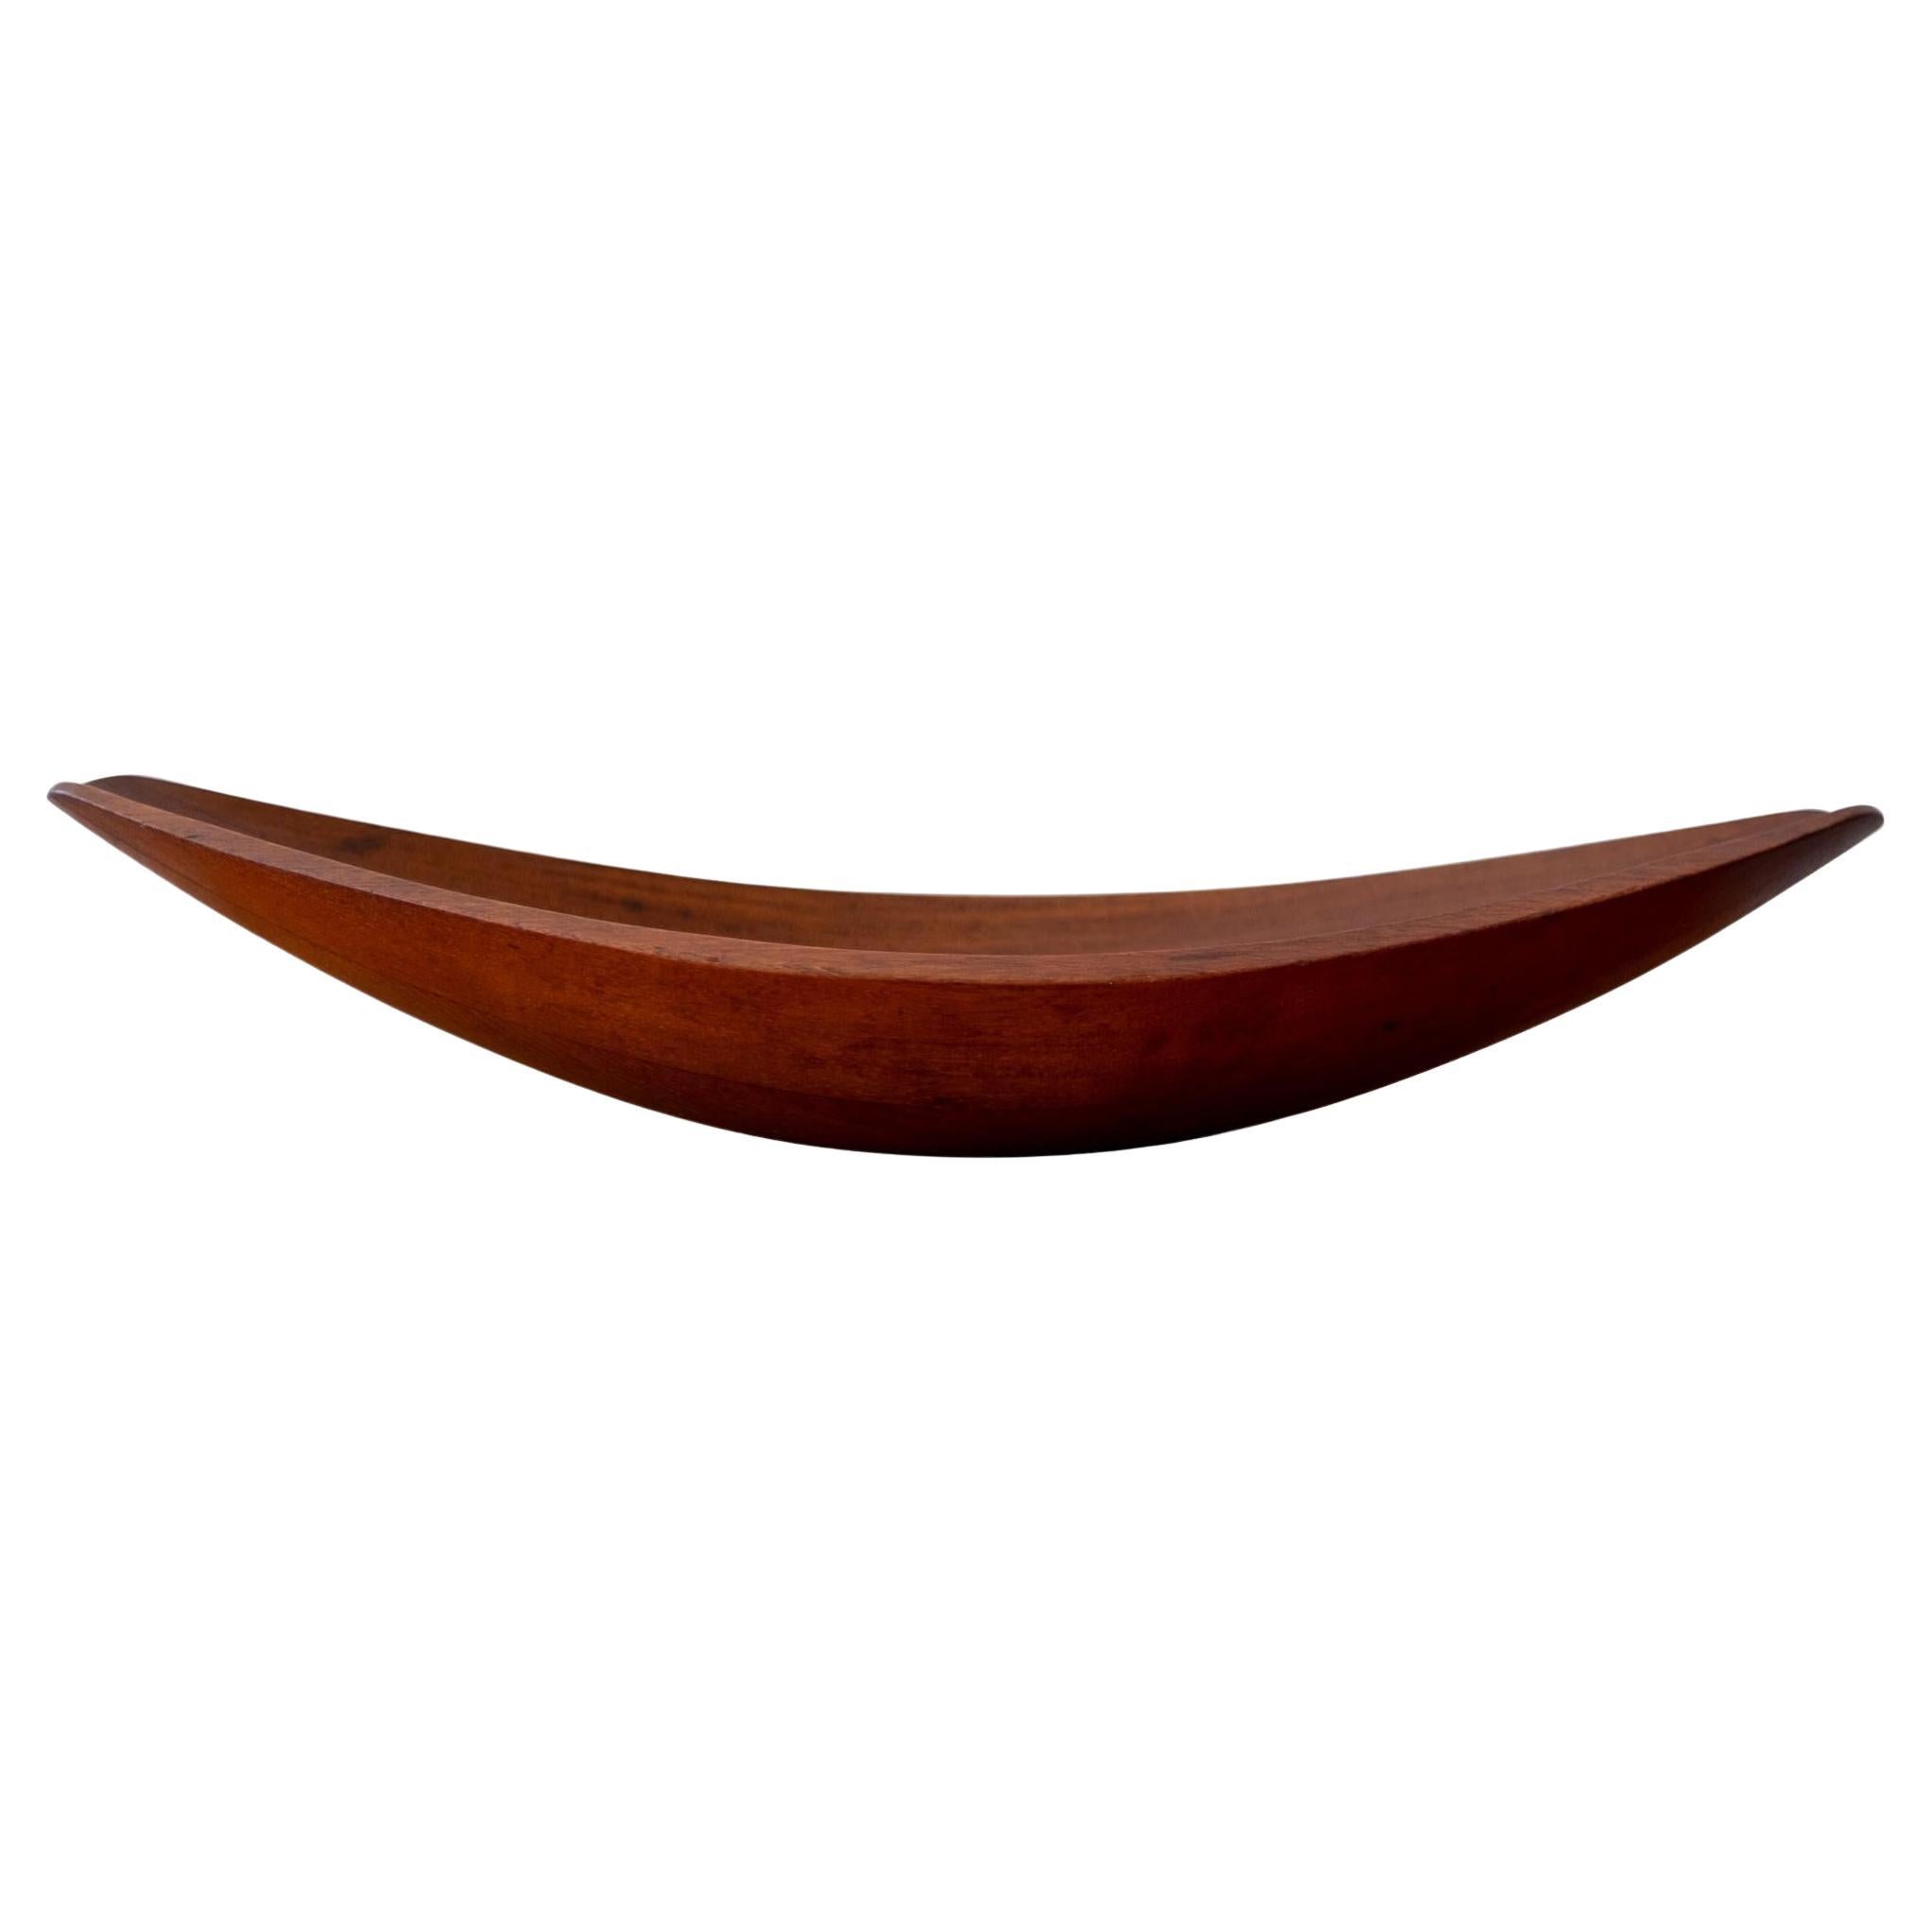 Teak Sculptural Canoe Bowl by Jens Quistgaard for Dansk